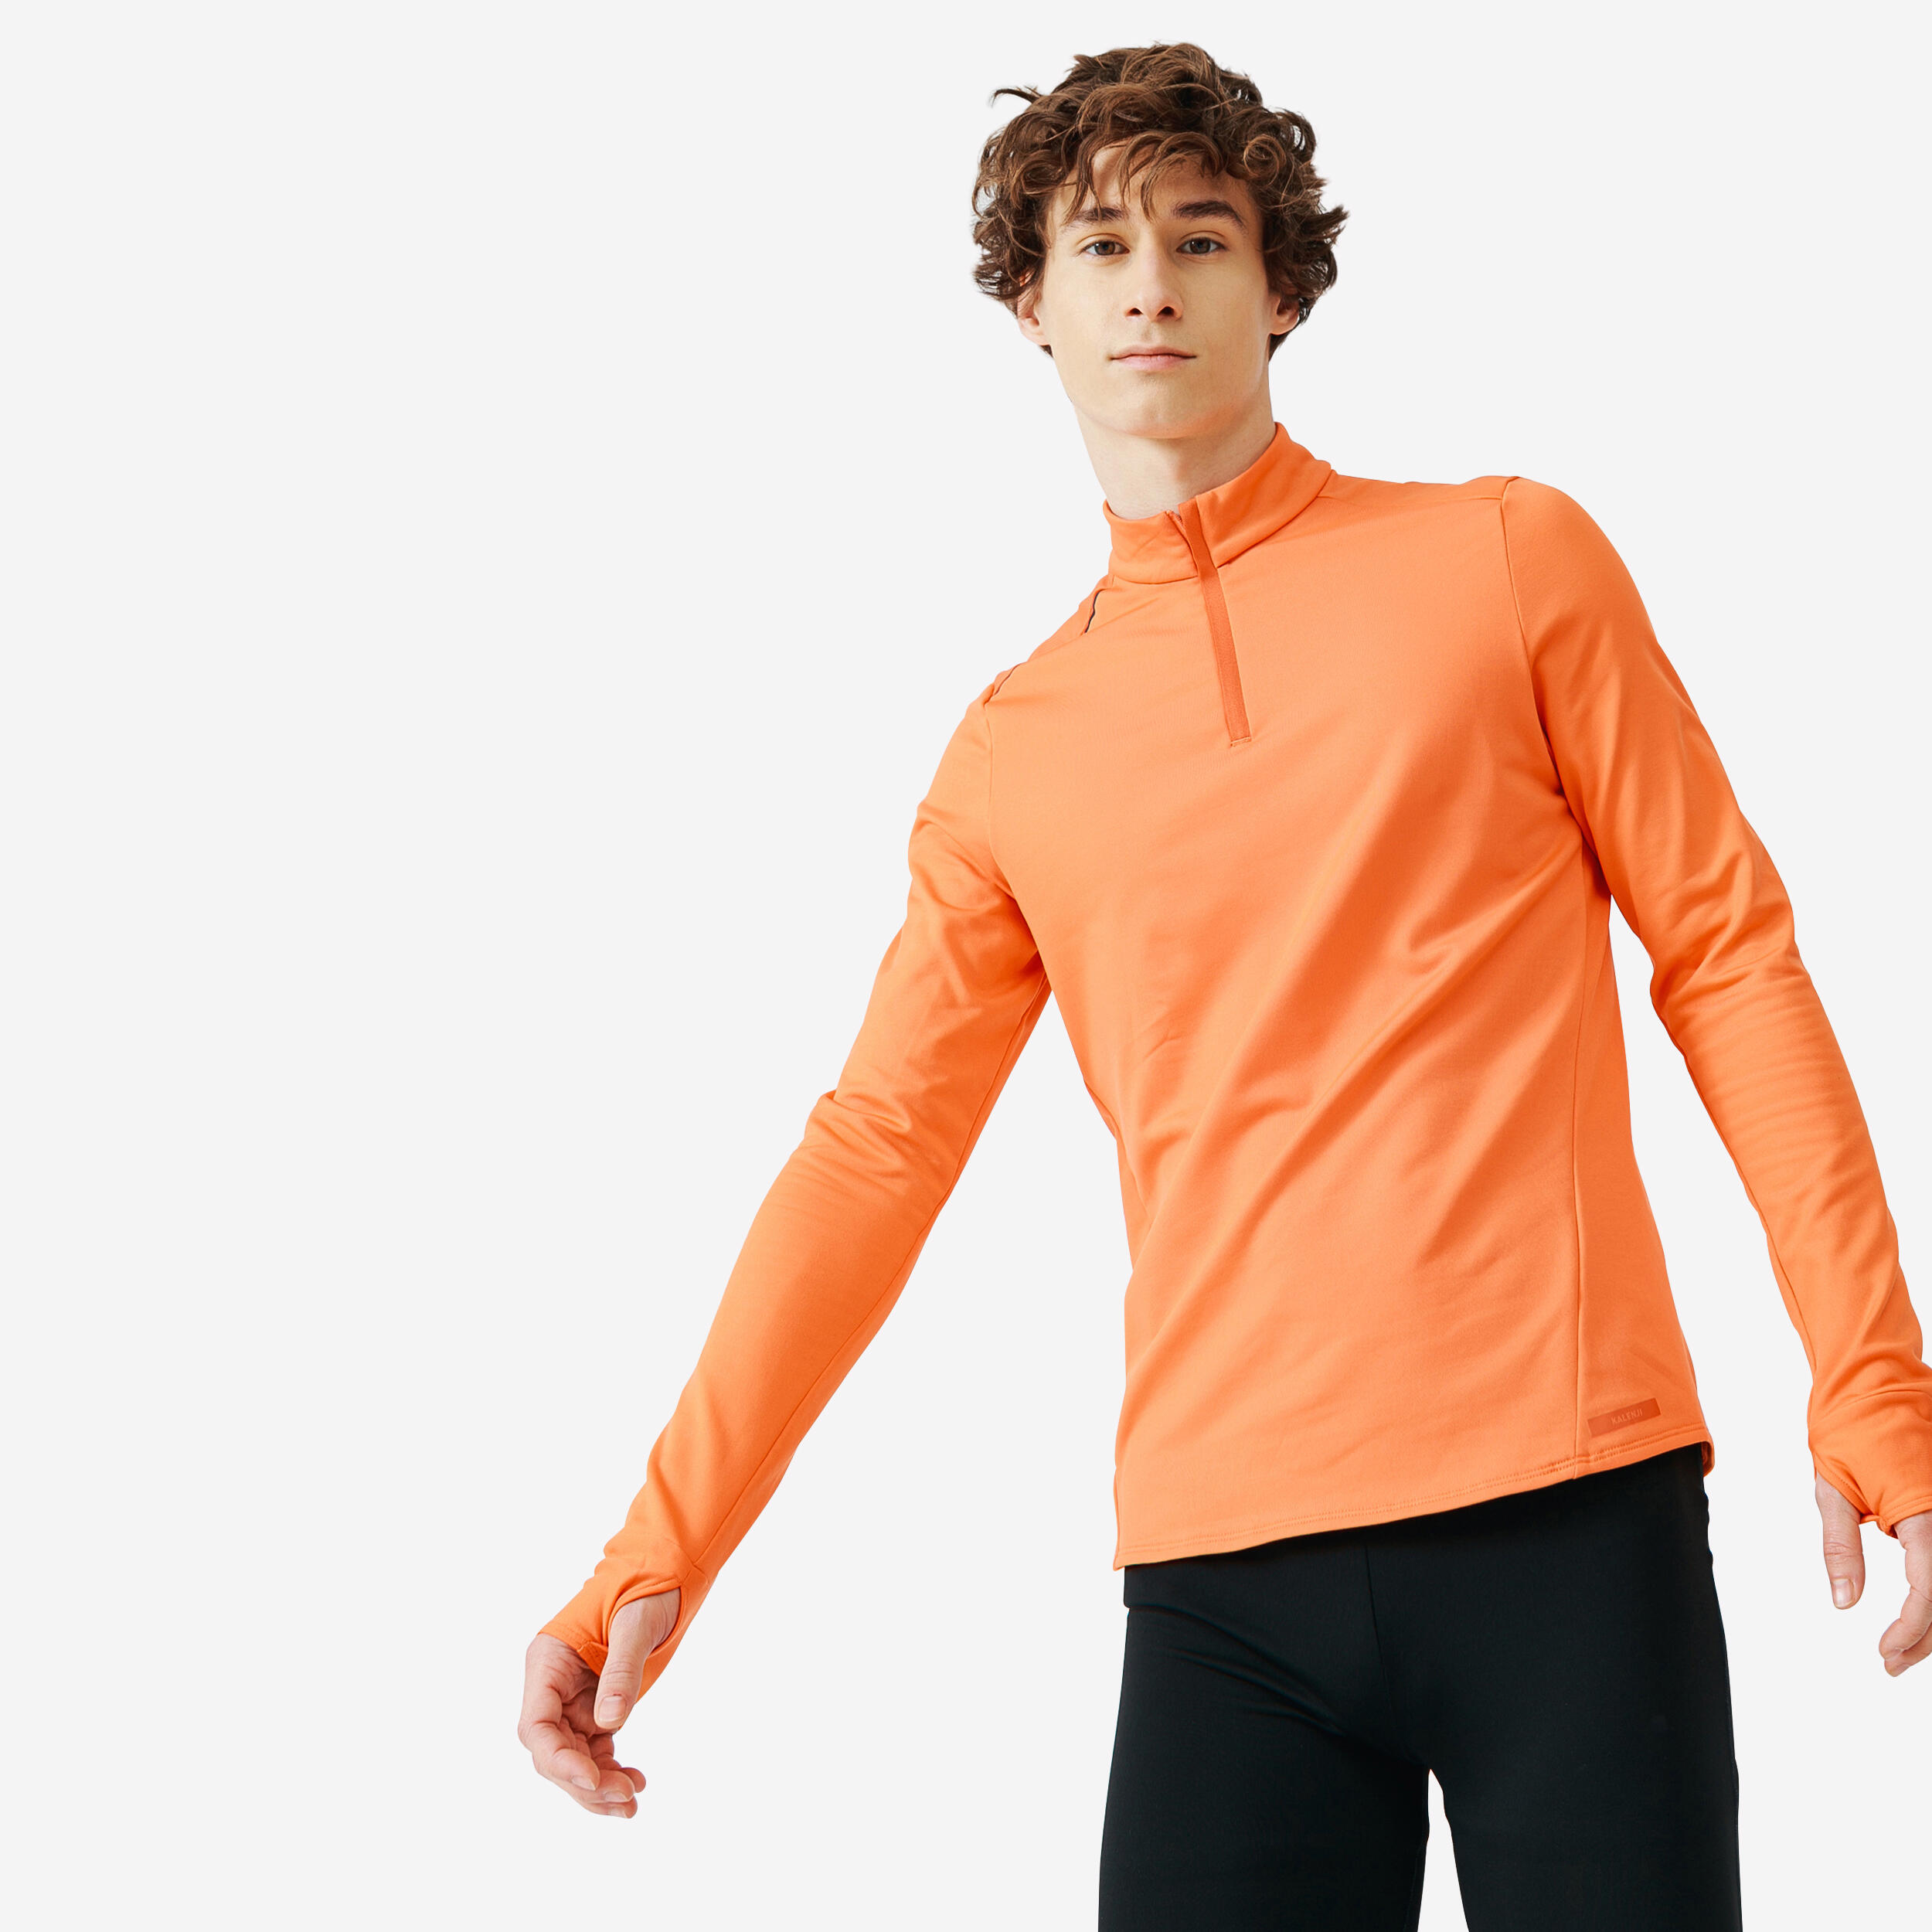 KALENJI Kalenji Men's Running Warm Long-Sleeved T-Shirt - spicy orange